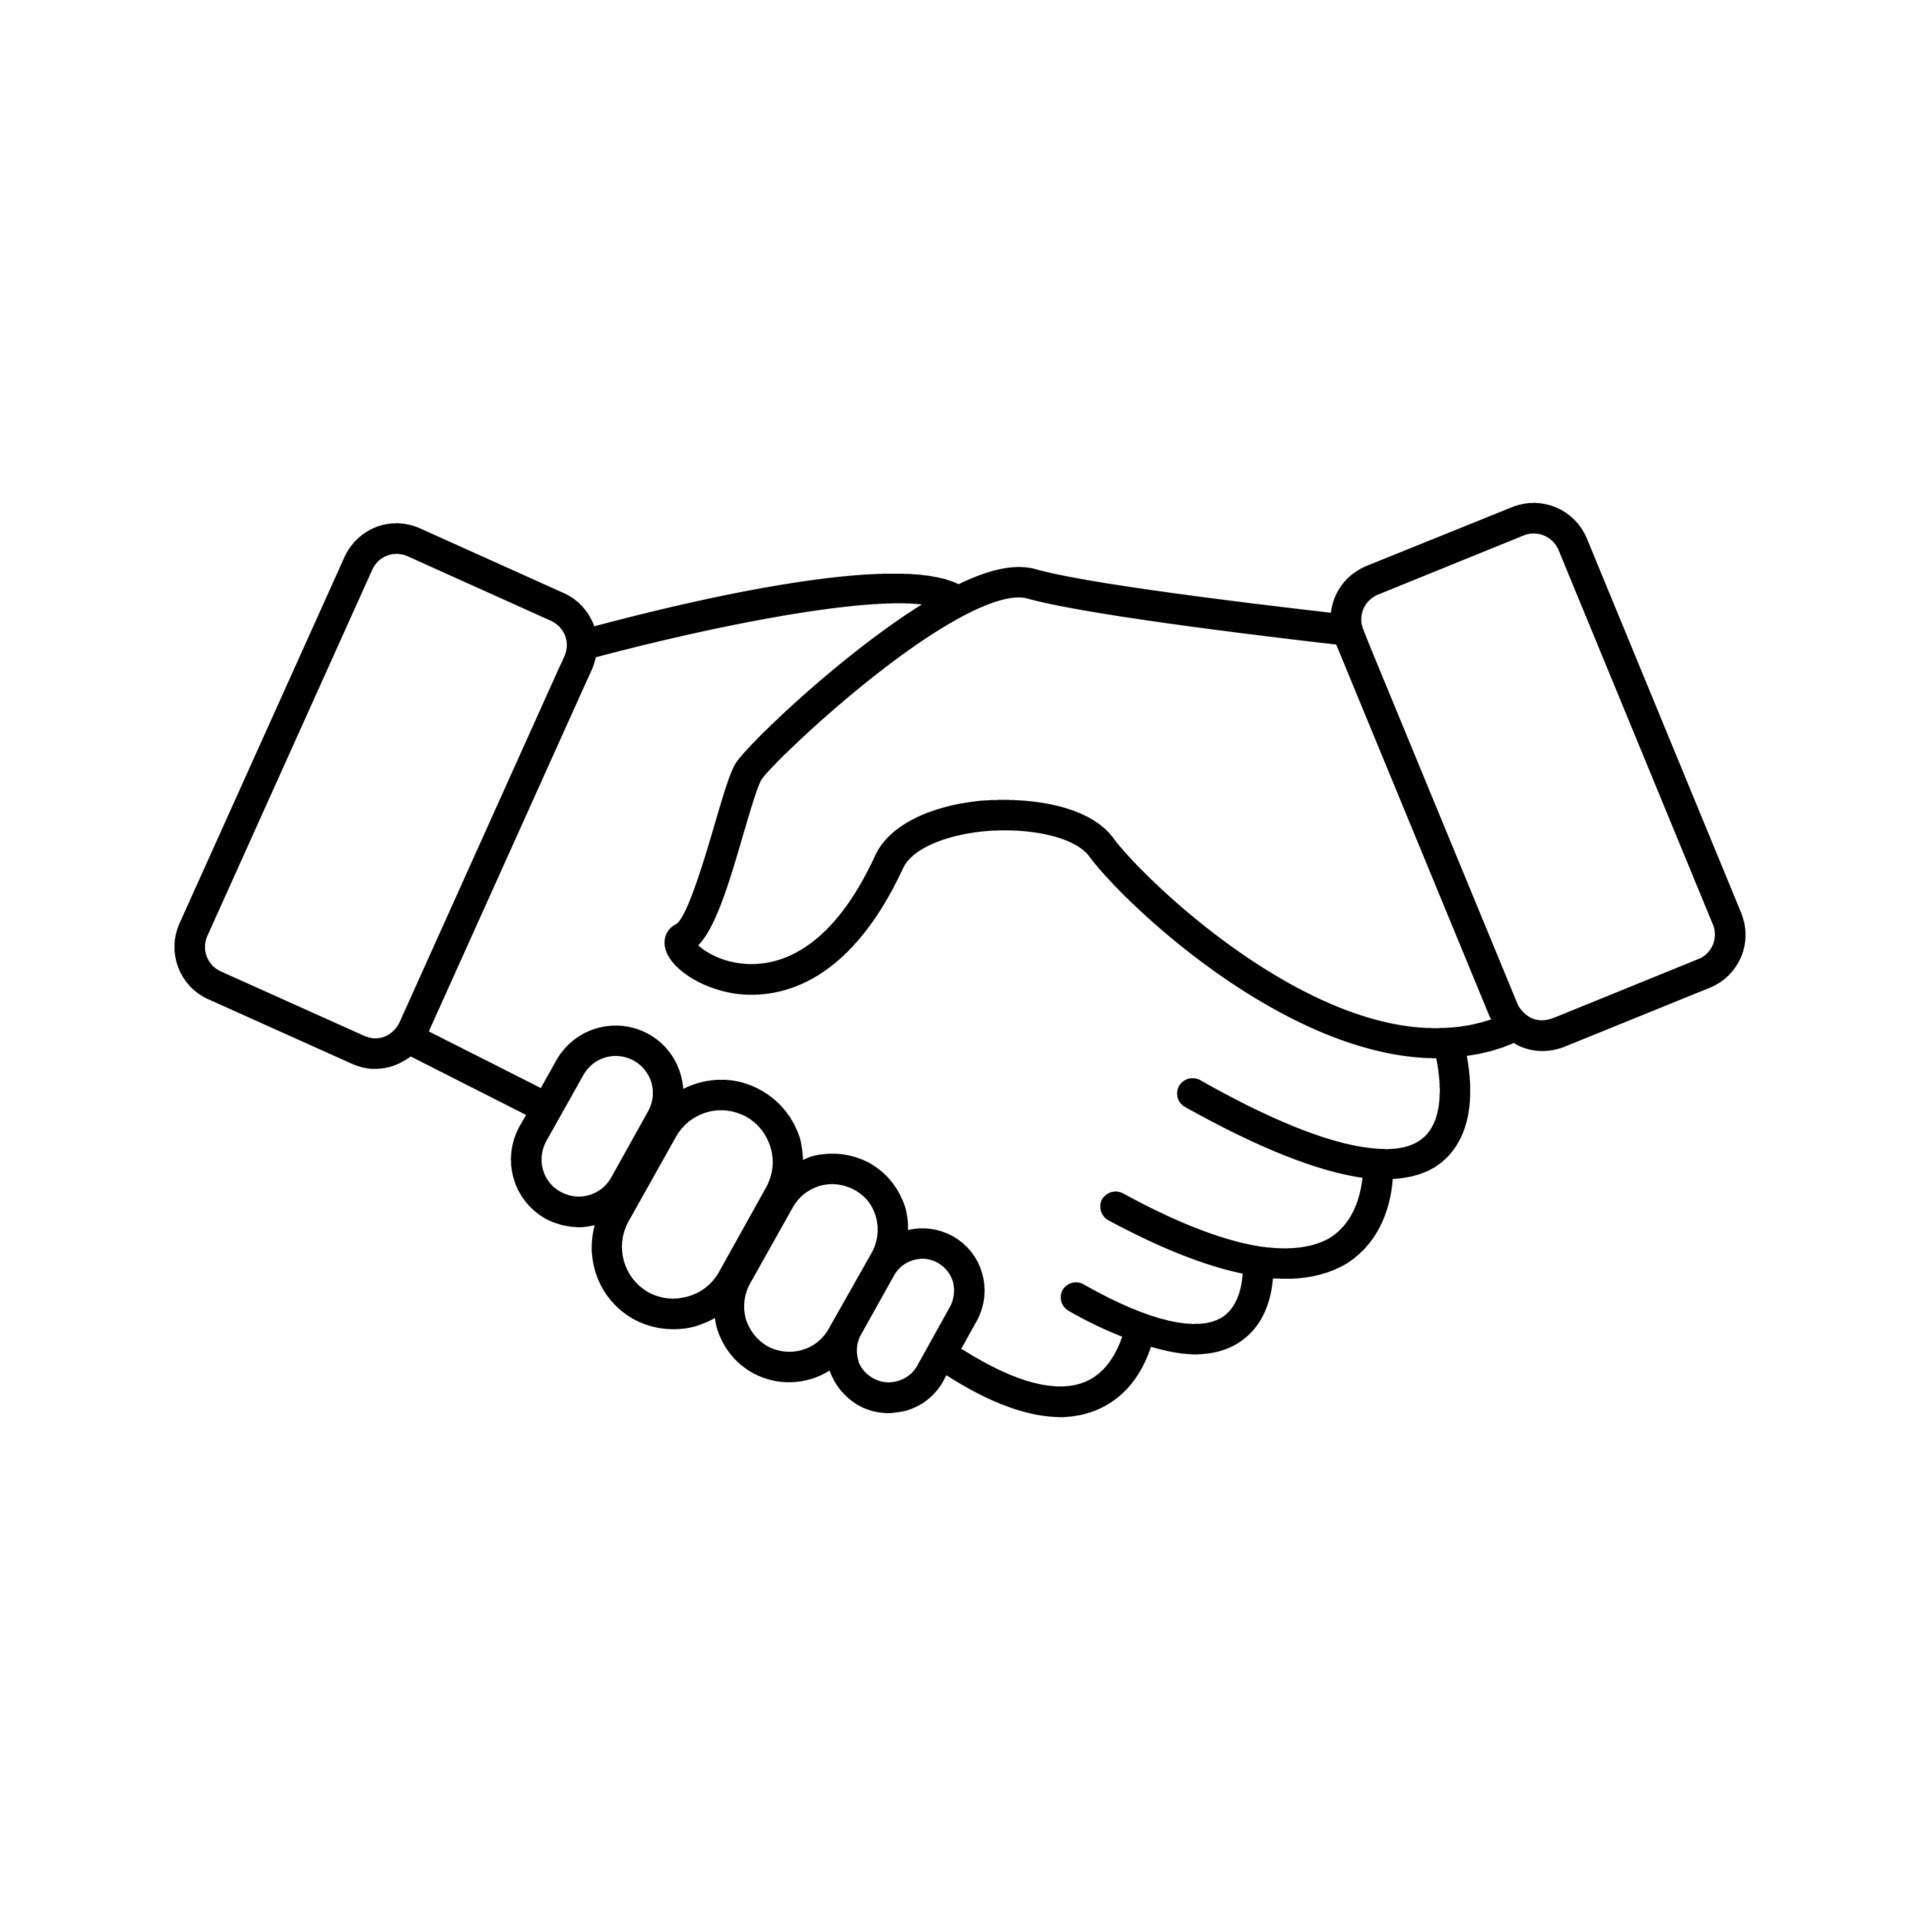 Vector of Handshake Icon. Deal Symbol 8015837 Vector Art at Vecteezy